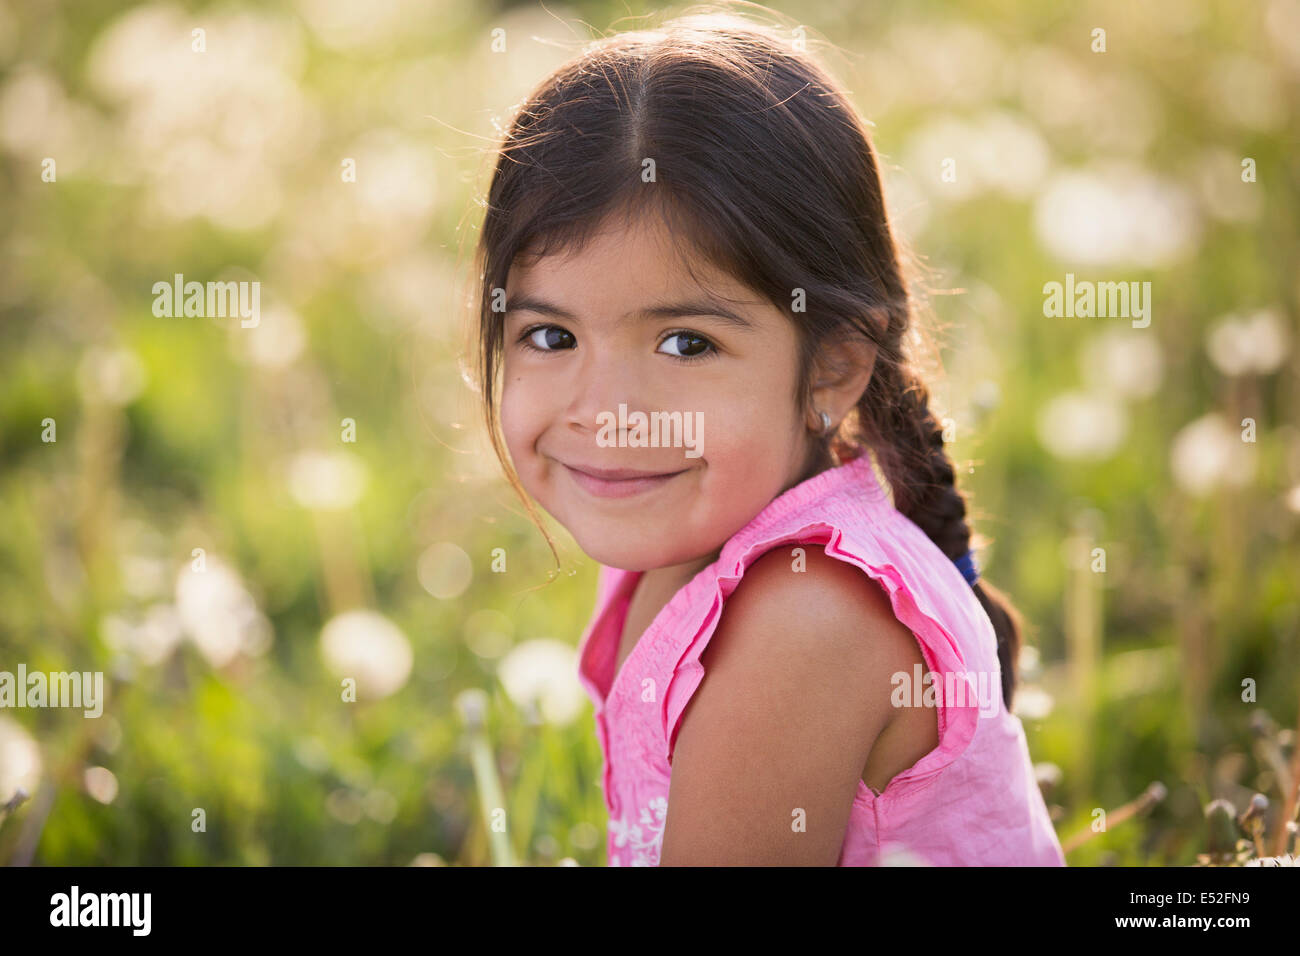 Une jeune fille aux cheveux bruns et tresses, dans une prairie de fleurs sauvages. Banque D'Images